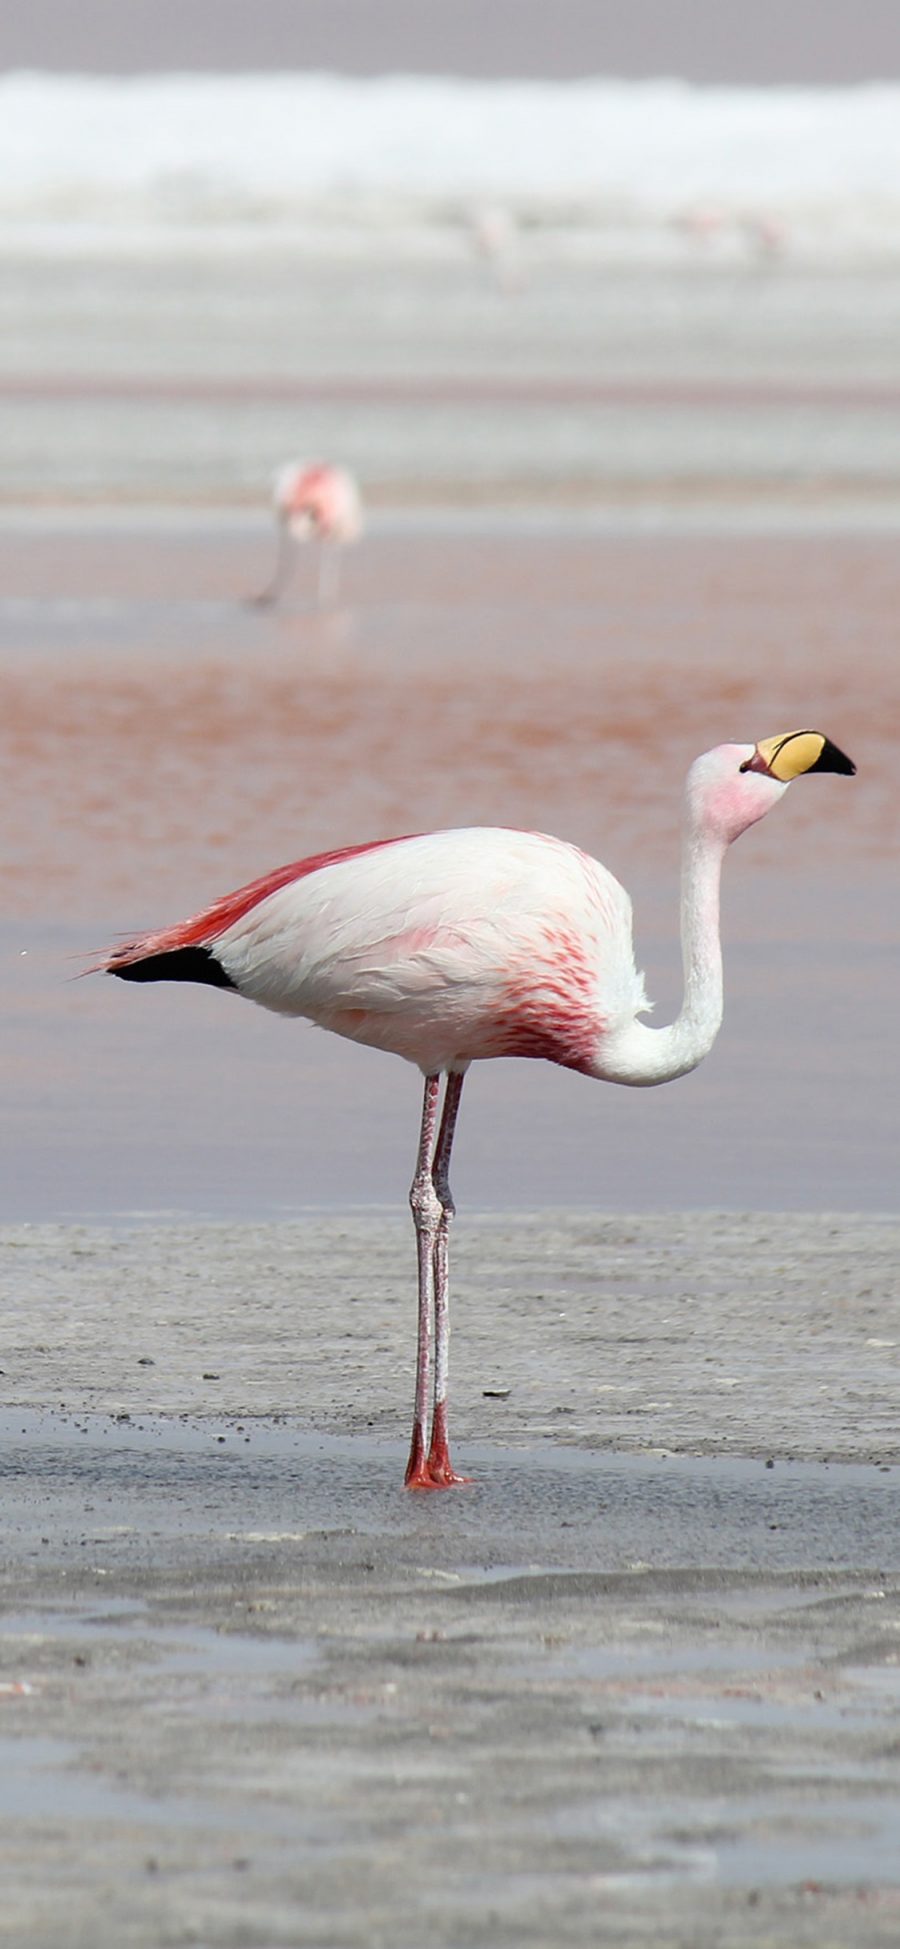 [2436×1125]海滩 火烈鸟 保护动物 粉色 苹果手机壁纸图片